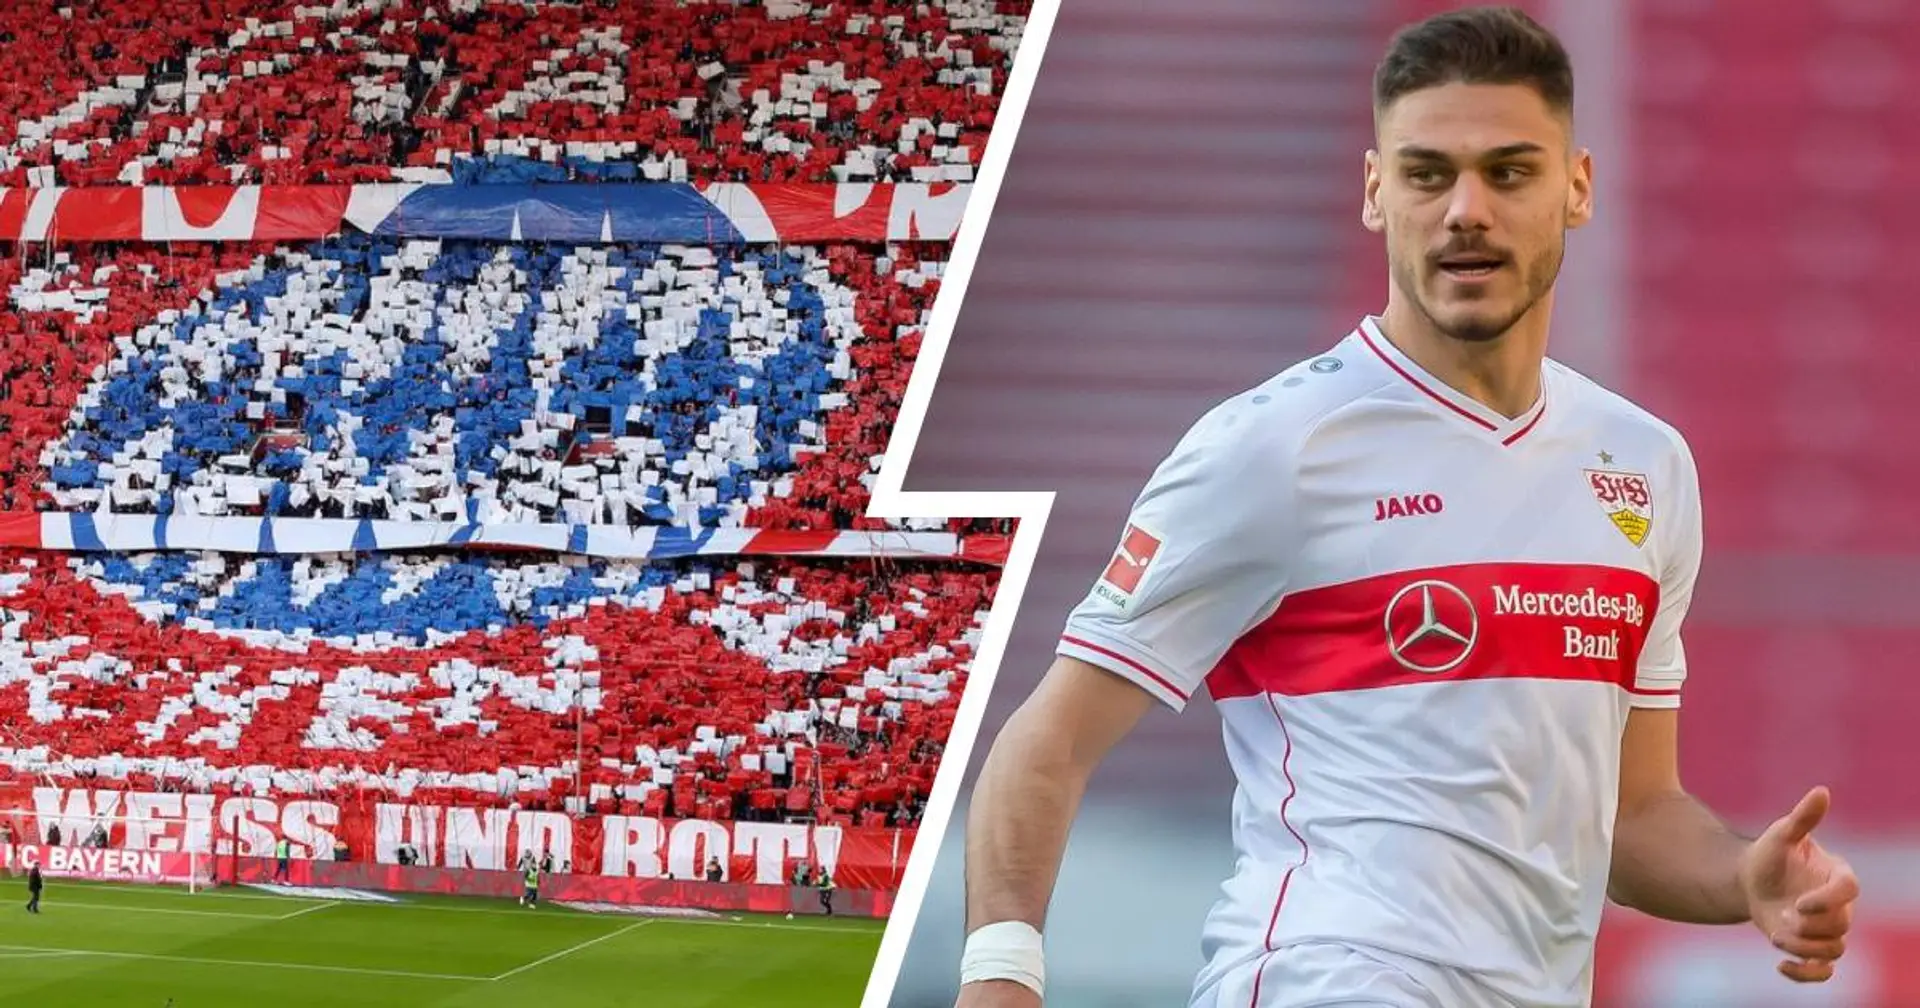 AEK-Trainer: Stuttgart-Verteidiger Mavropanos bringt alles mit, um bei Bayern zu spielen